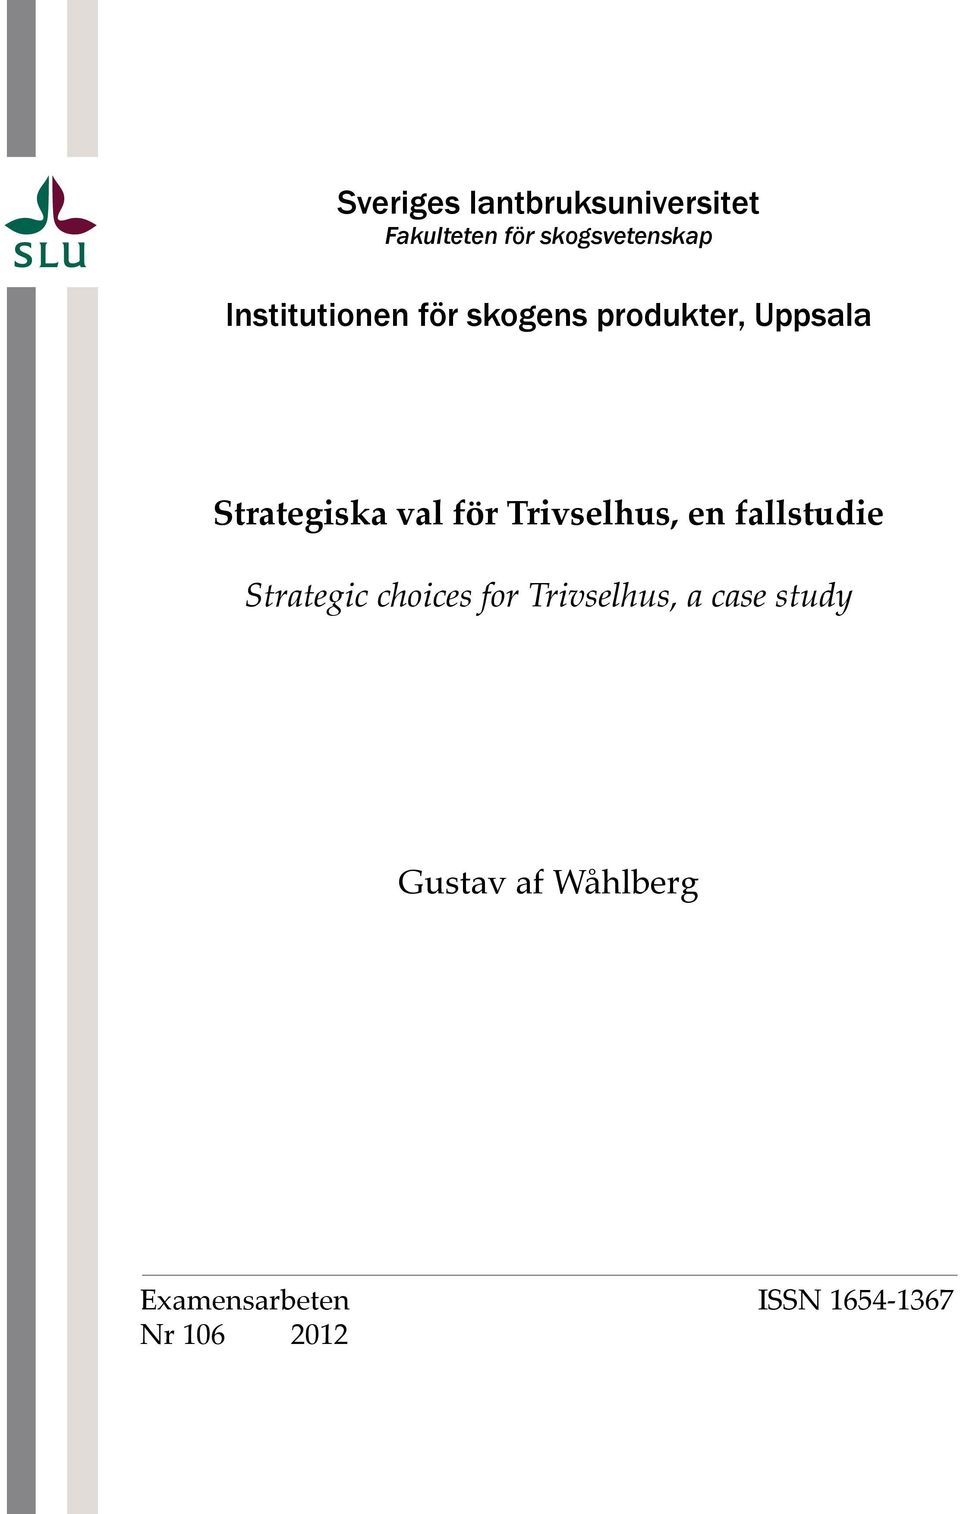 Trivselhus, en fallstudie Strategic choices for Trivselhus, a